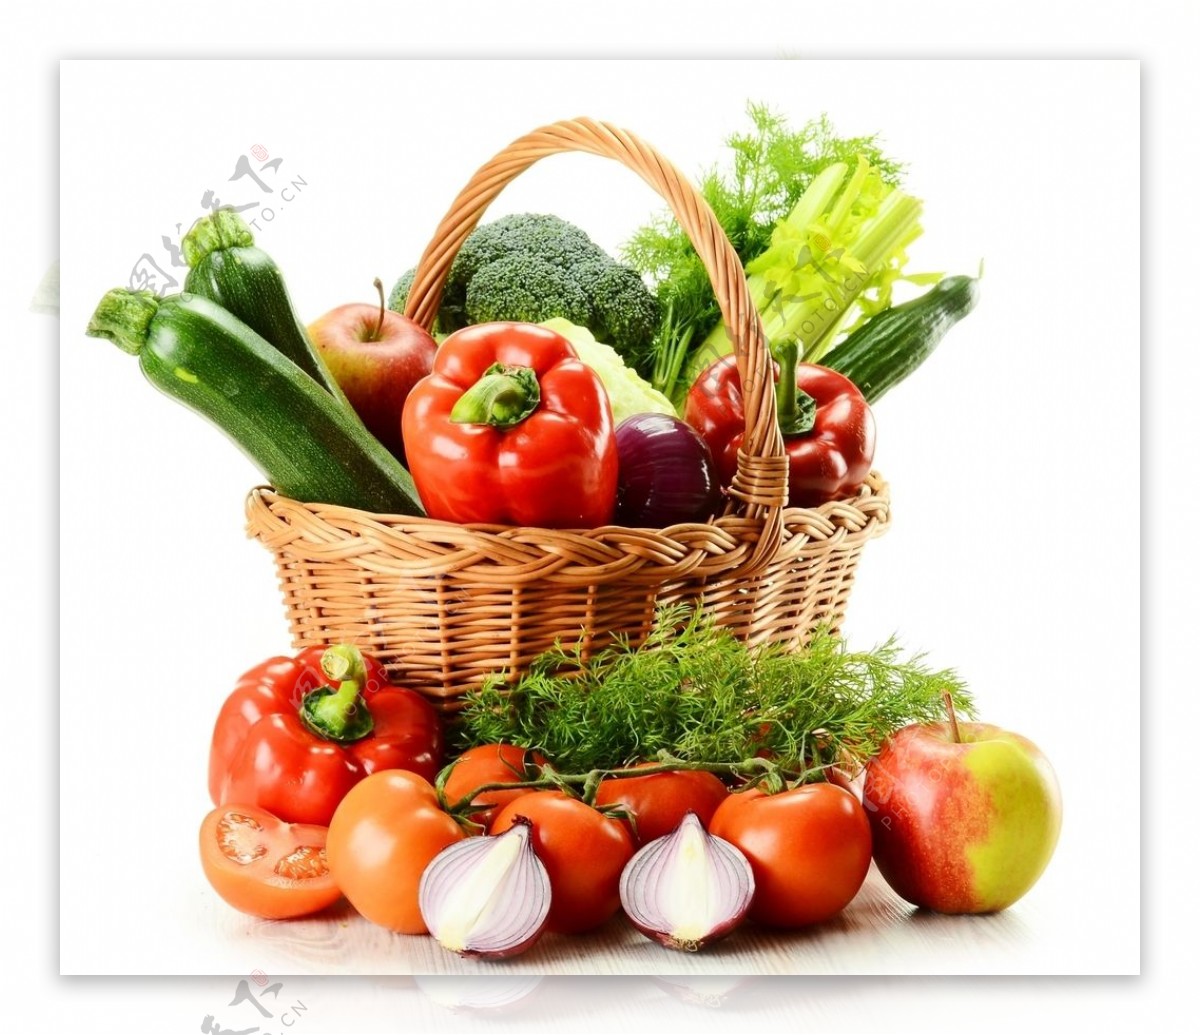 蔬菜大全图片